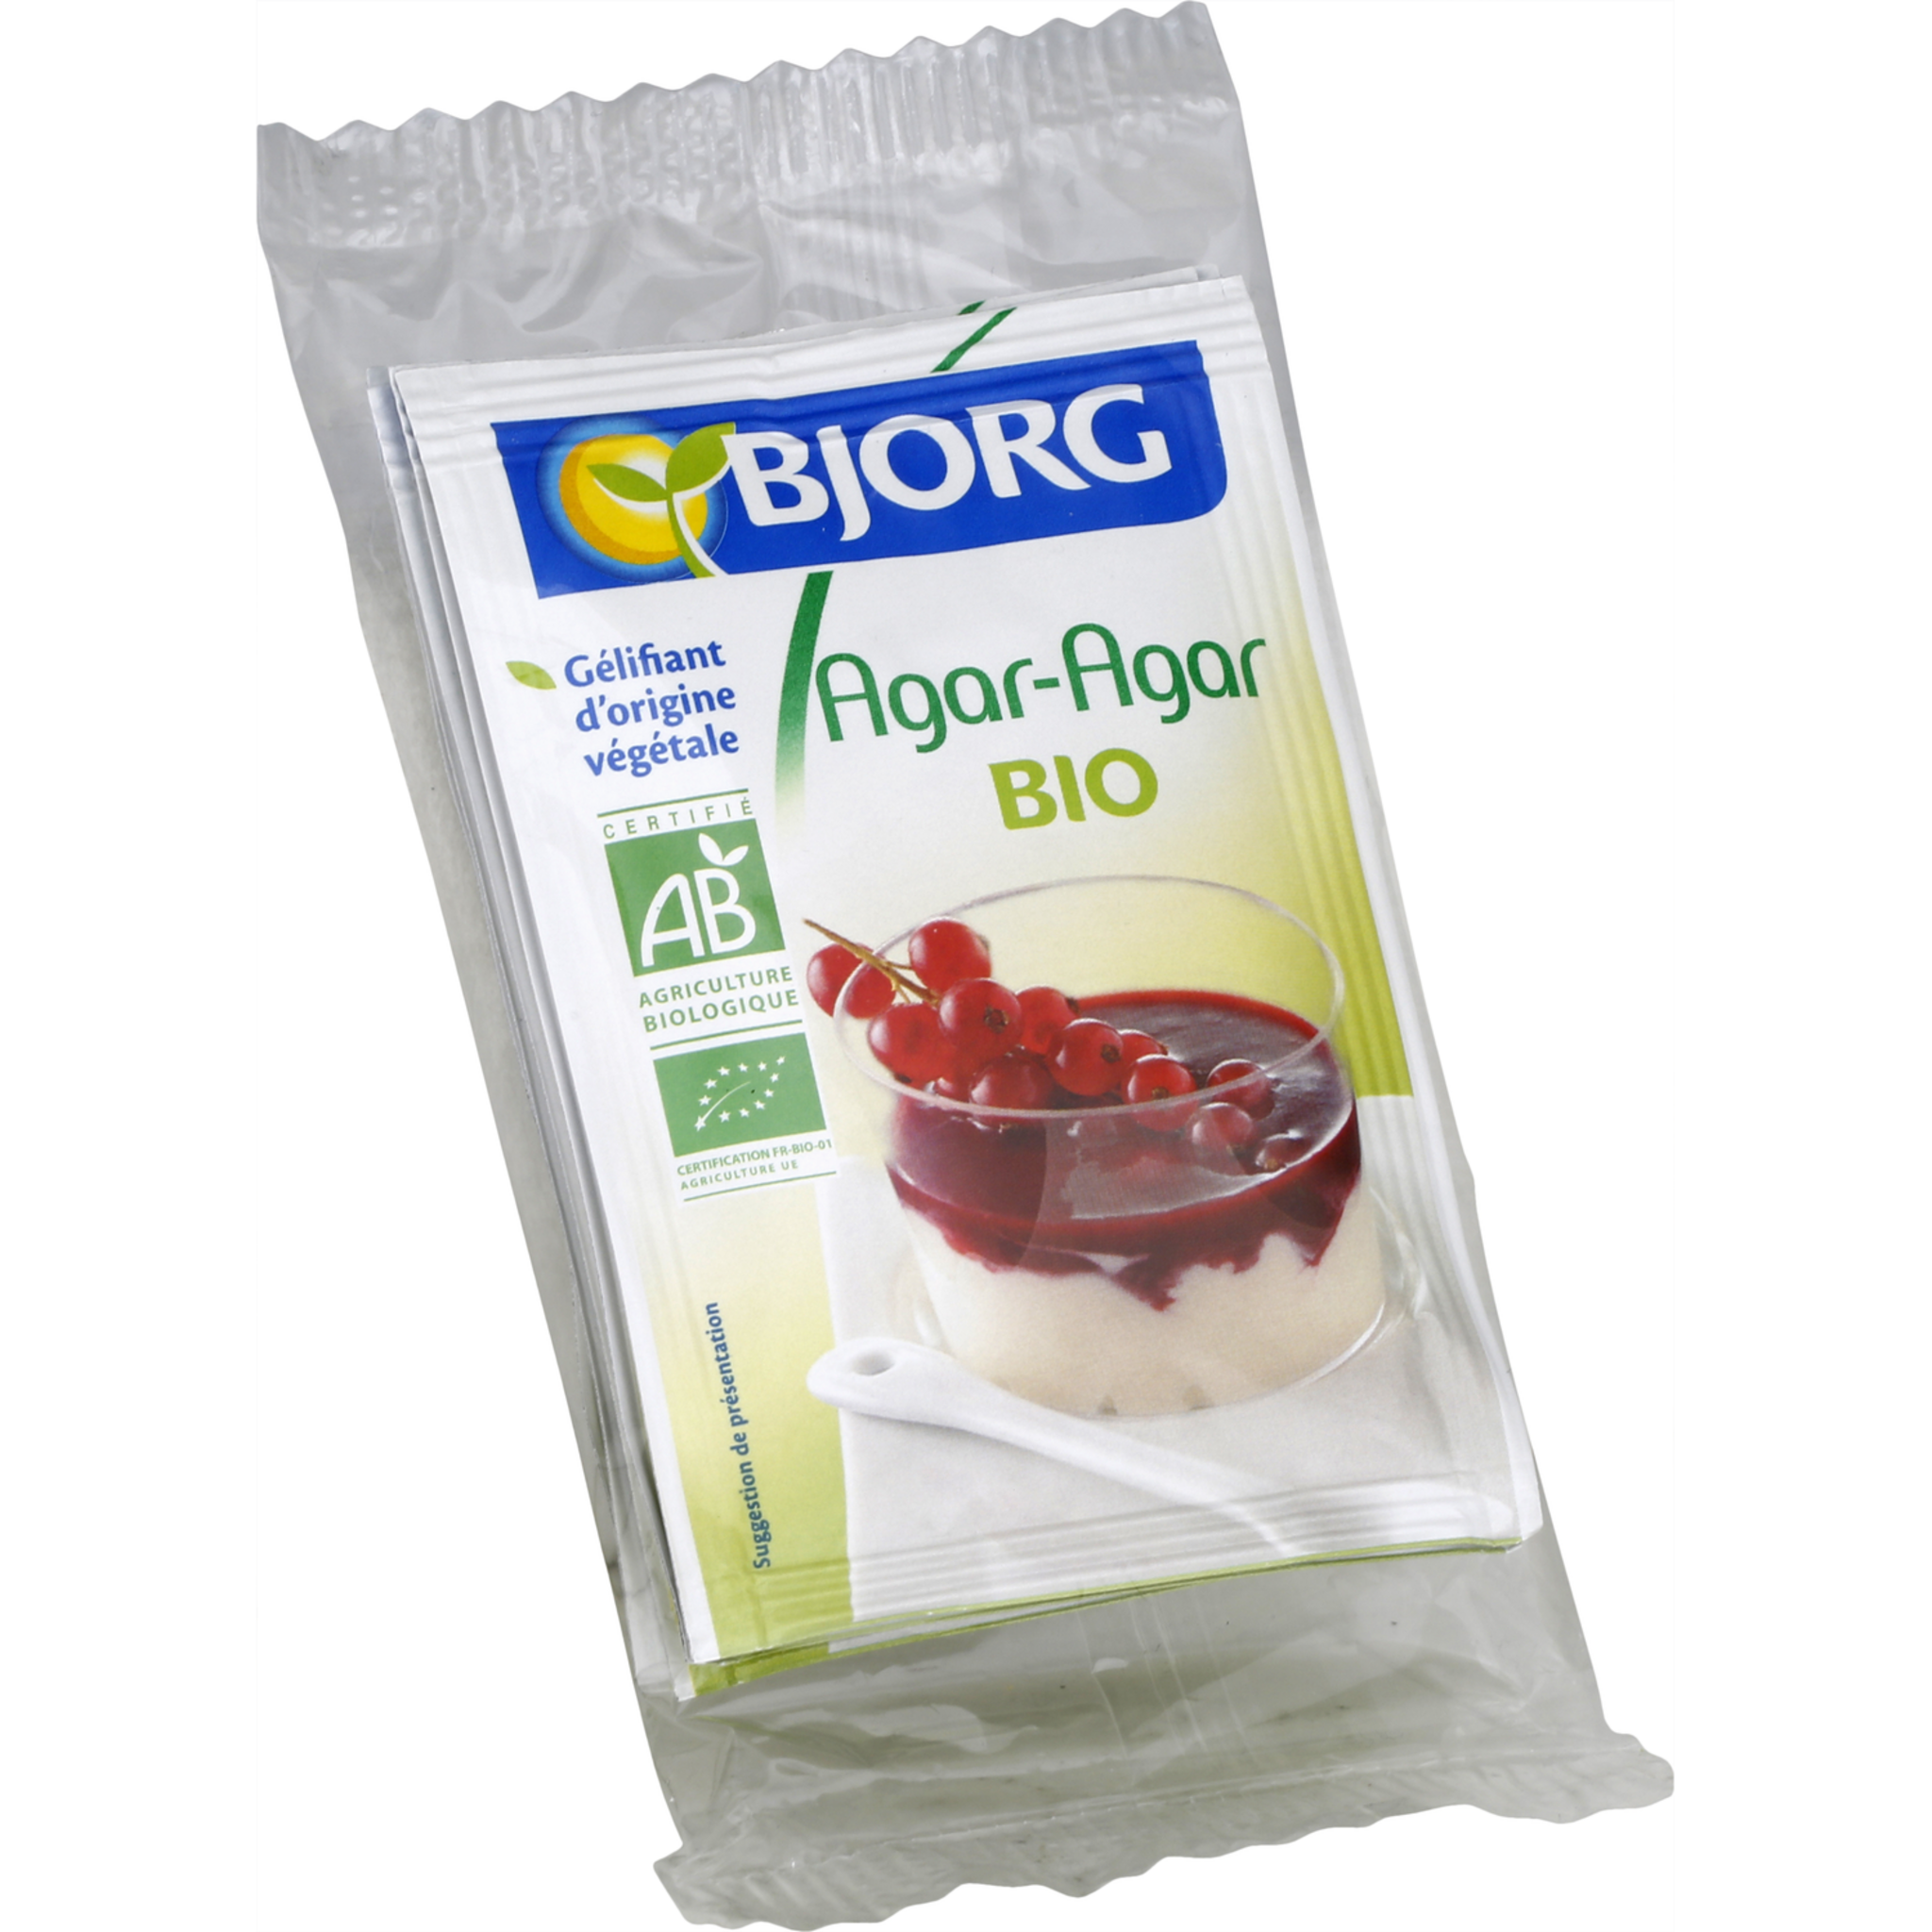 BJORG Agar agar bio gélifiant végétal 20g pas cher 